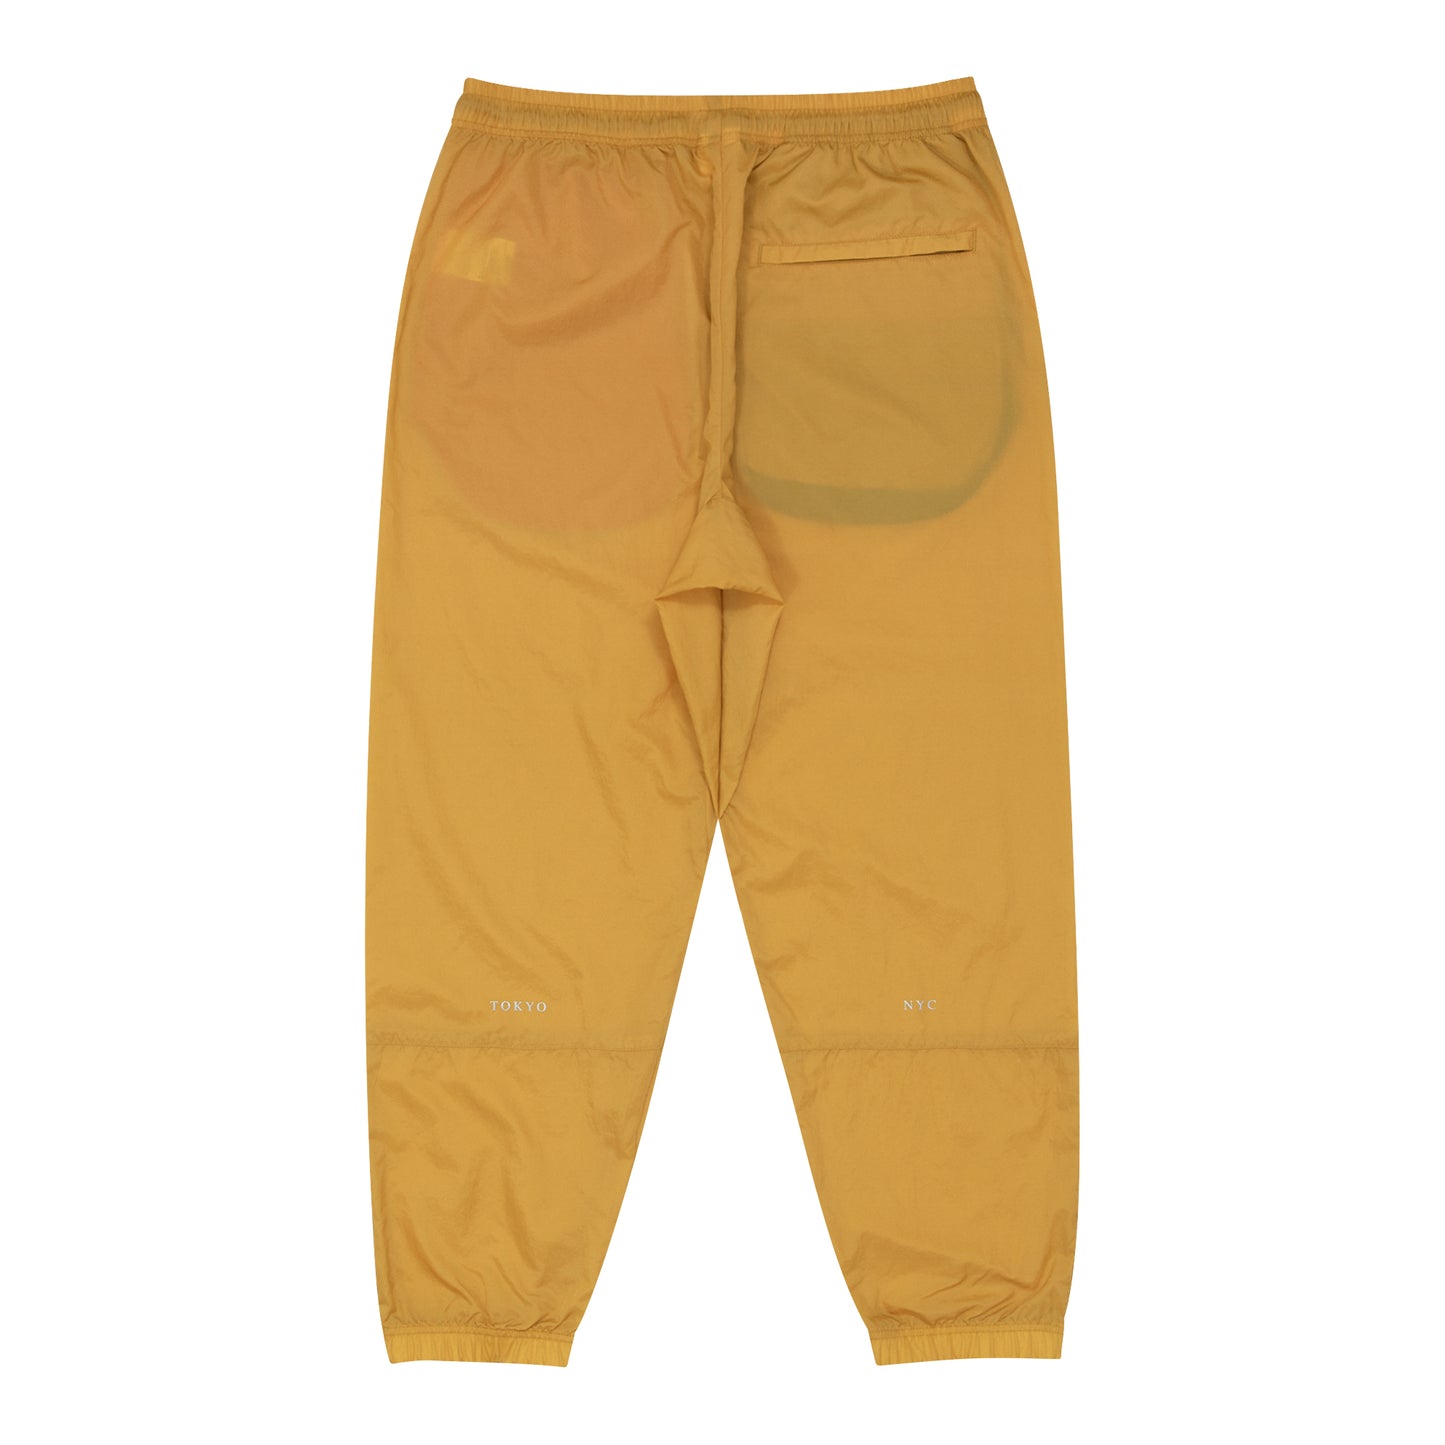 W Face Long Pants (soul yellow)